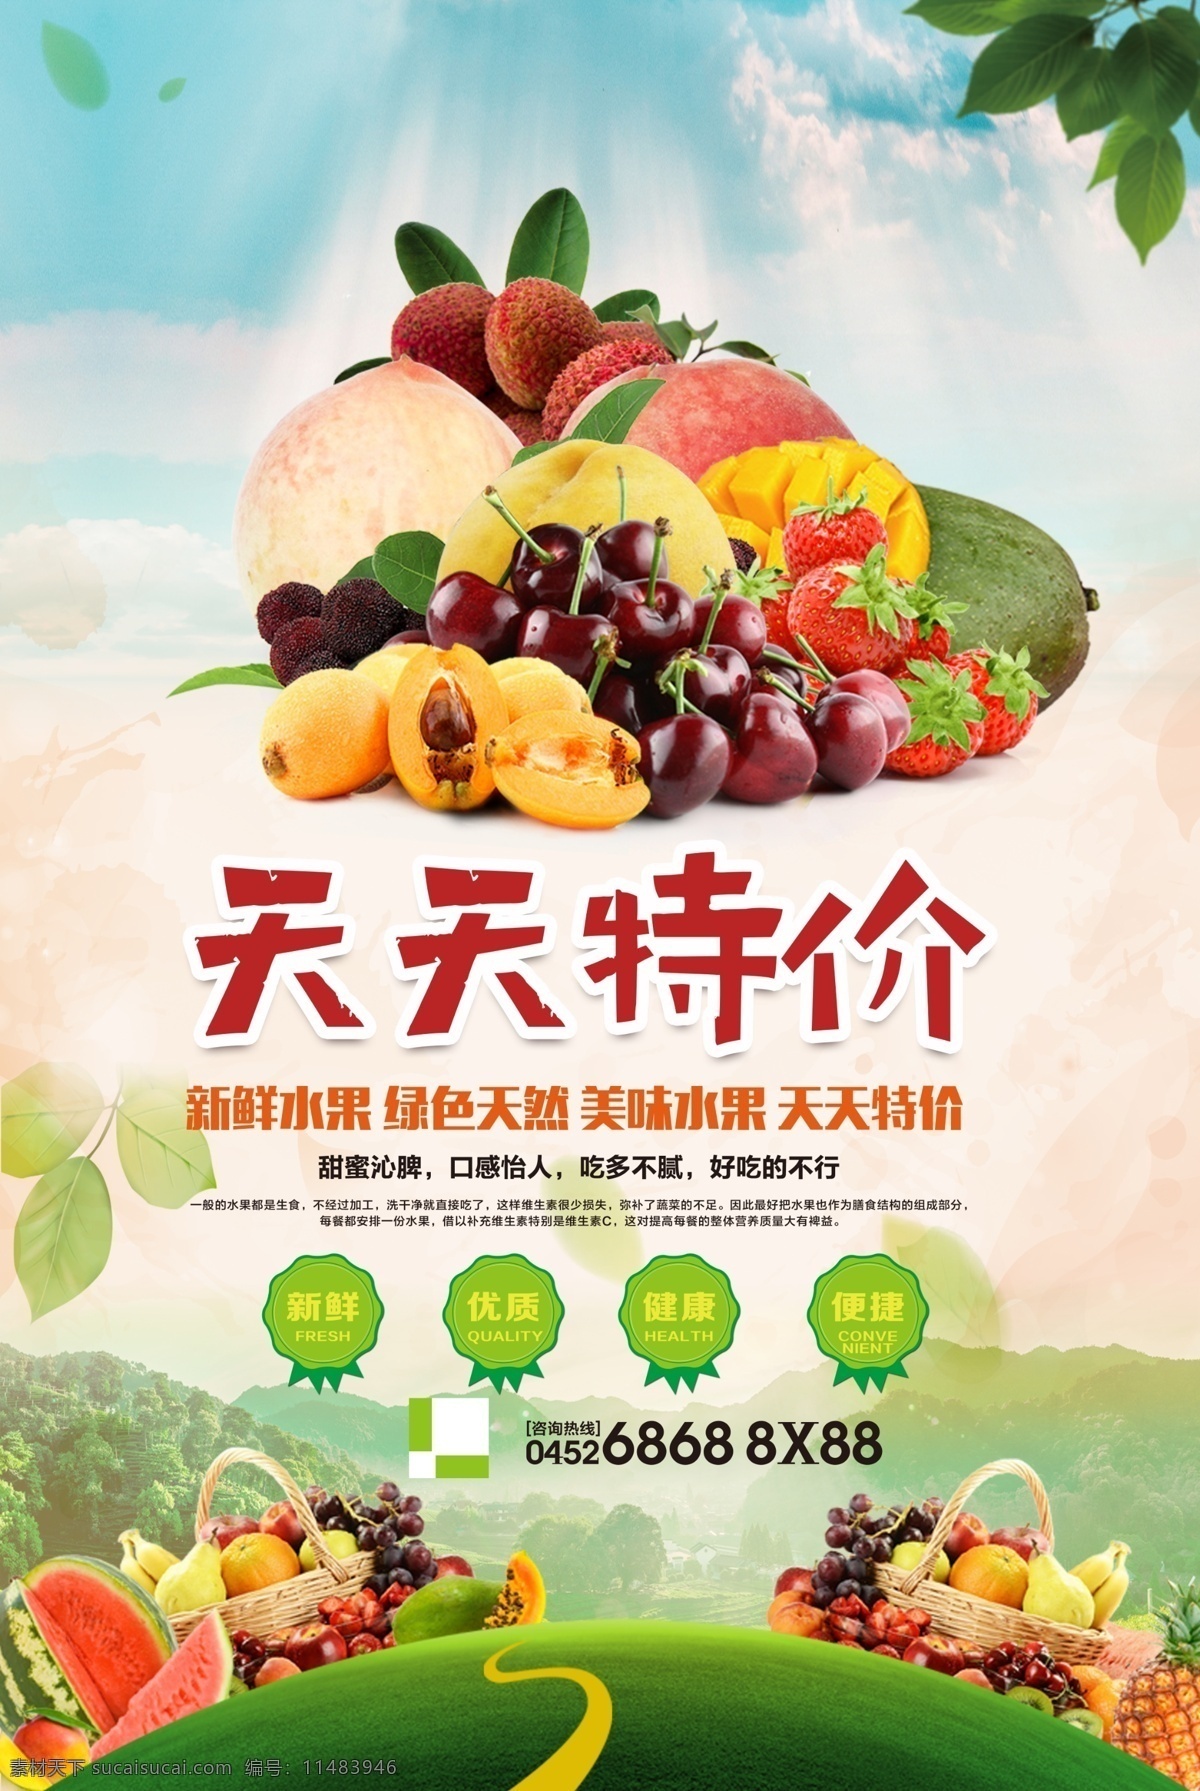 天然 绿色 新鲜 美味 水果 e91 三大 菜系 餐饮 海